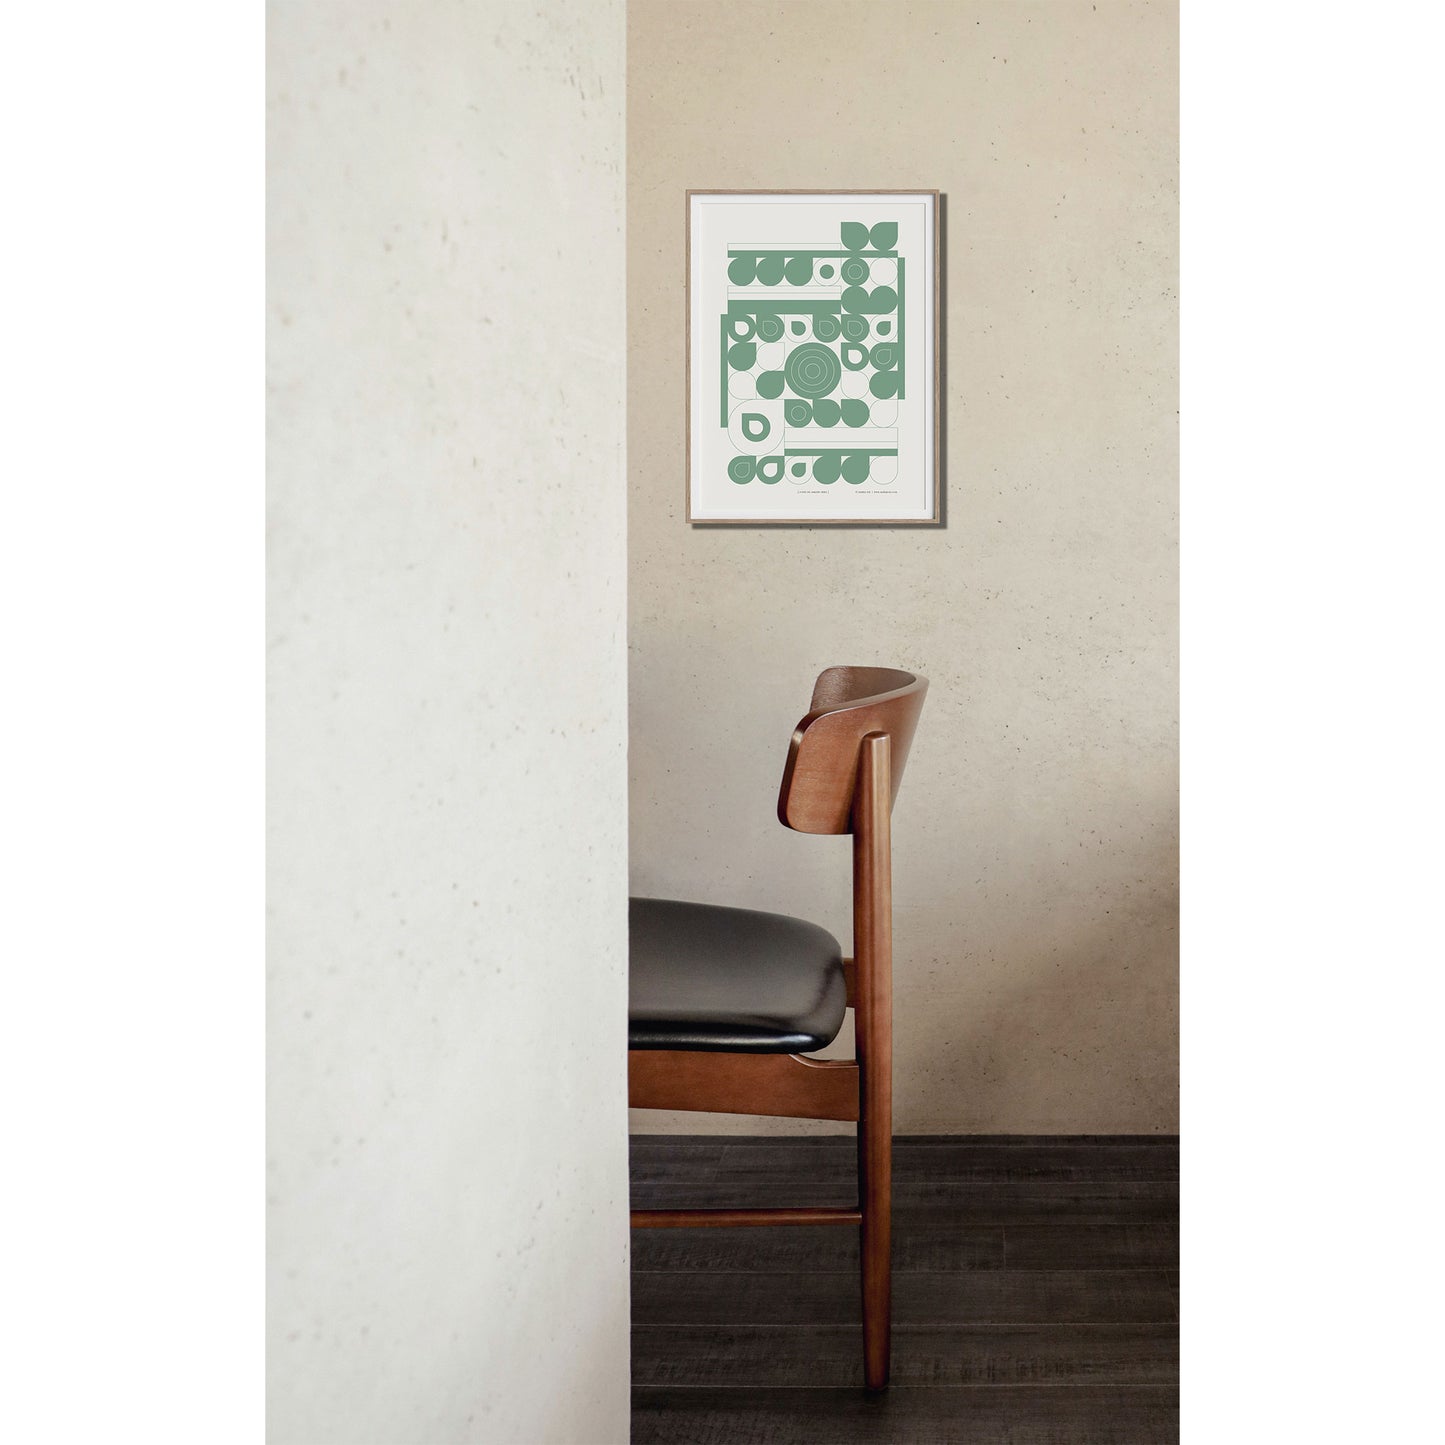 Productafbeelding, poster "fond de jardin vert", foto impressie 2, ingelijst aan een wand met een stijlvolle design stoel erbij